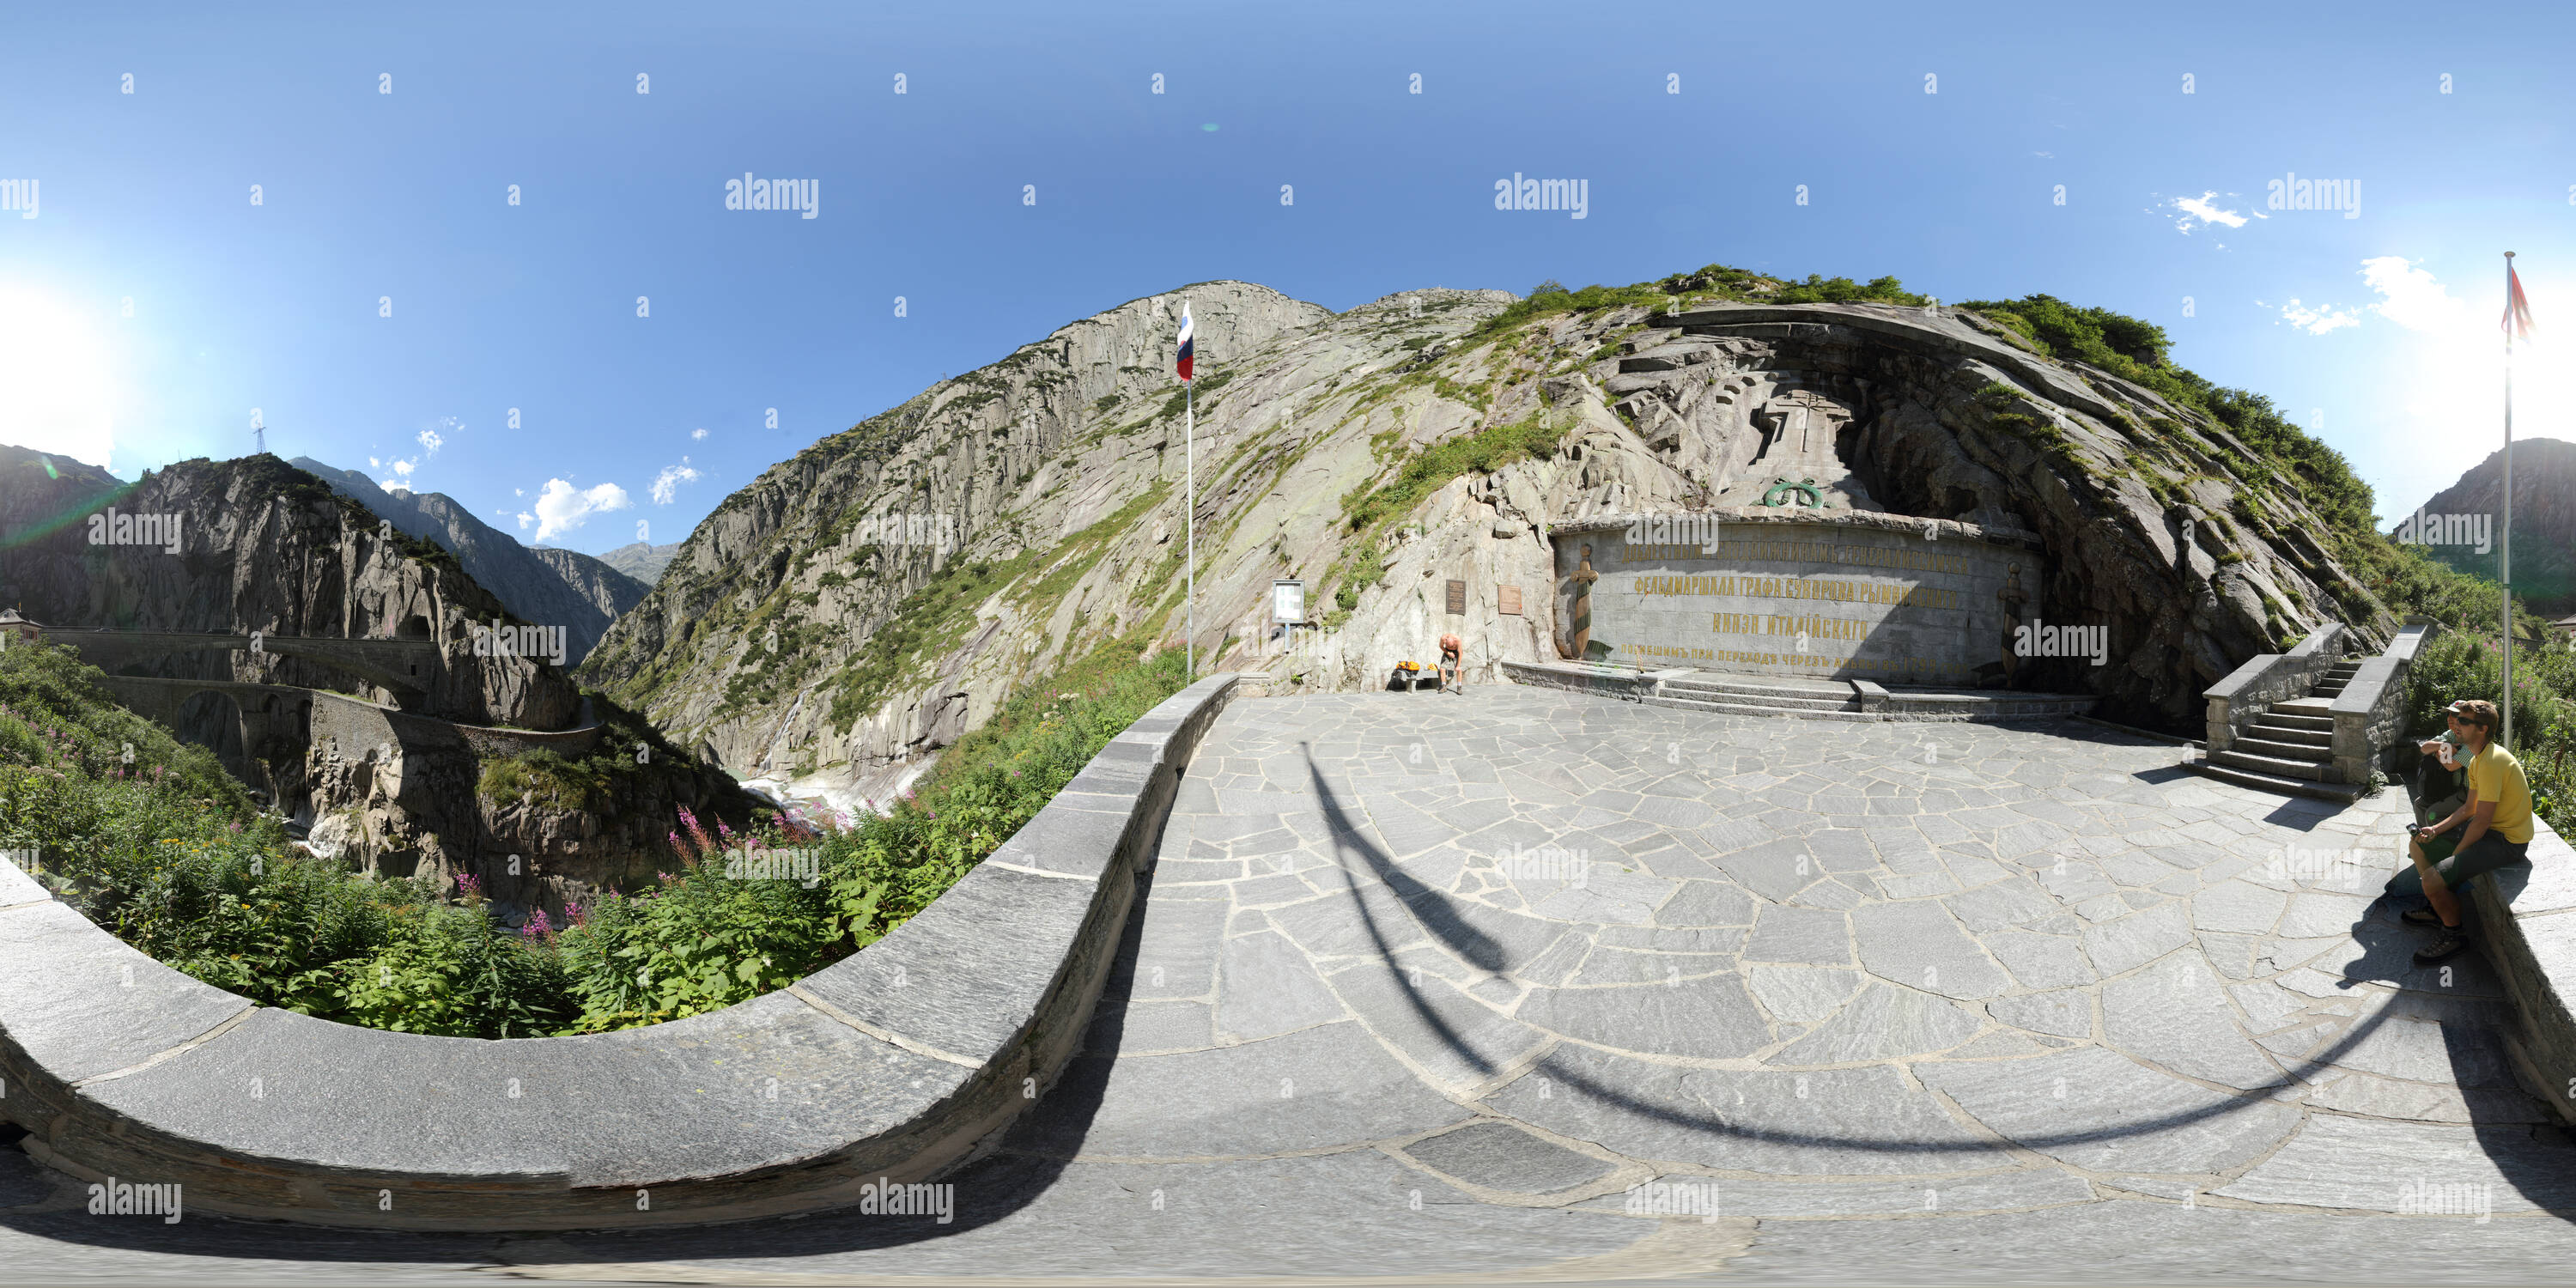 Vue panoramique à 360° de Monument Suworow